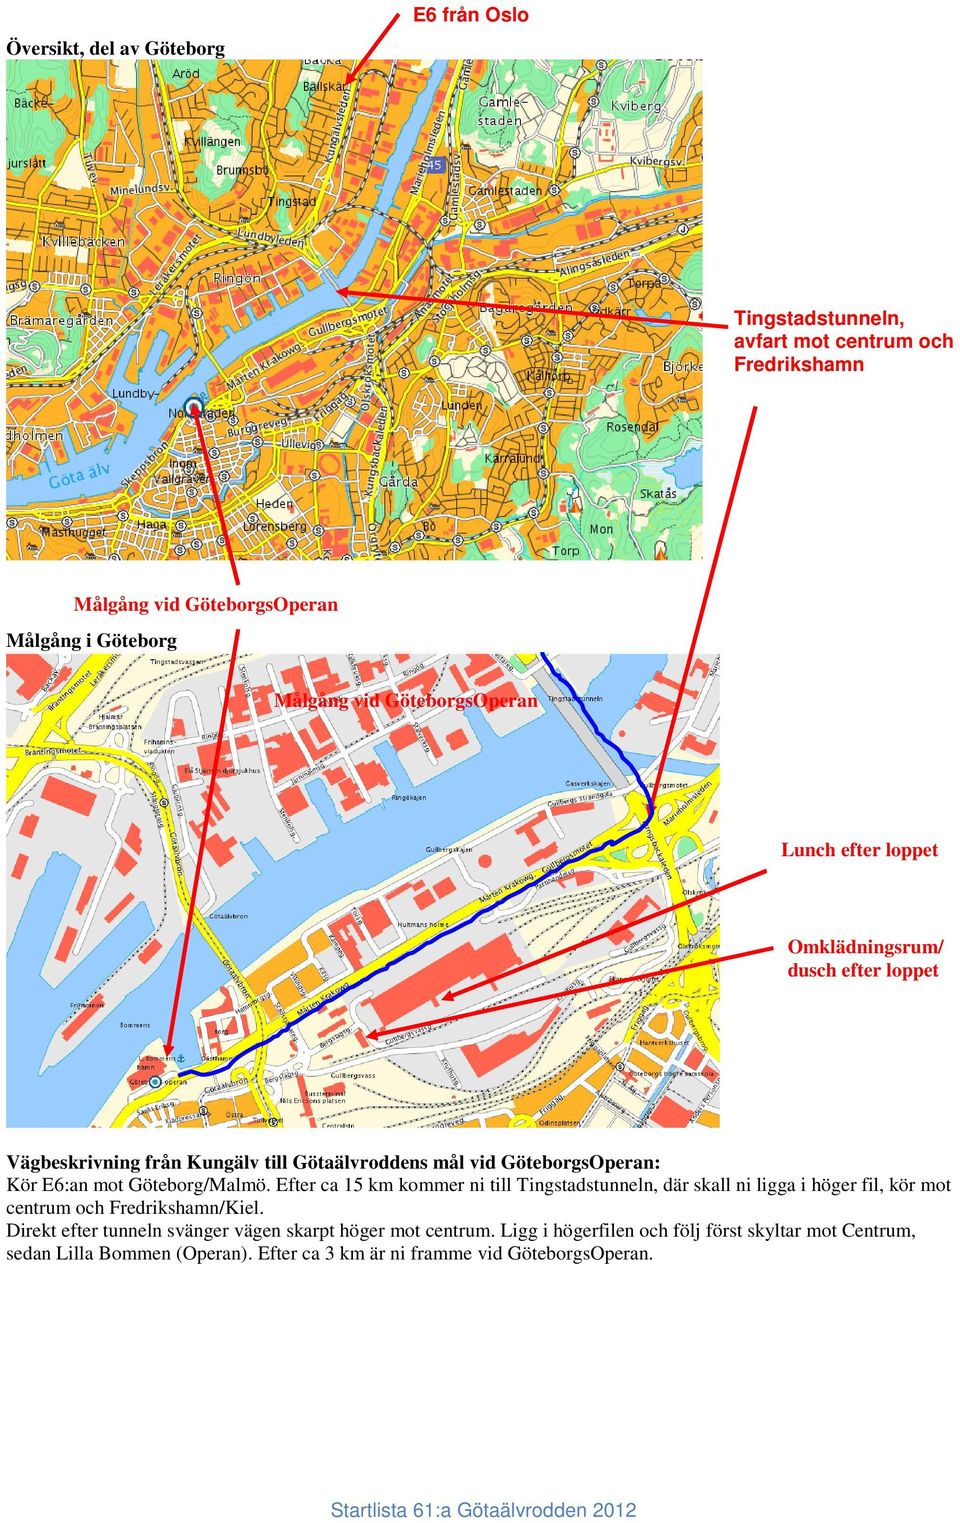 Göteborg/Malmö. Efter ca 15 km kommer ni till Tingstadstunneln, där skall ni ligga i höger fil, kör mot centrum och Fredrikshamn/Kiel.